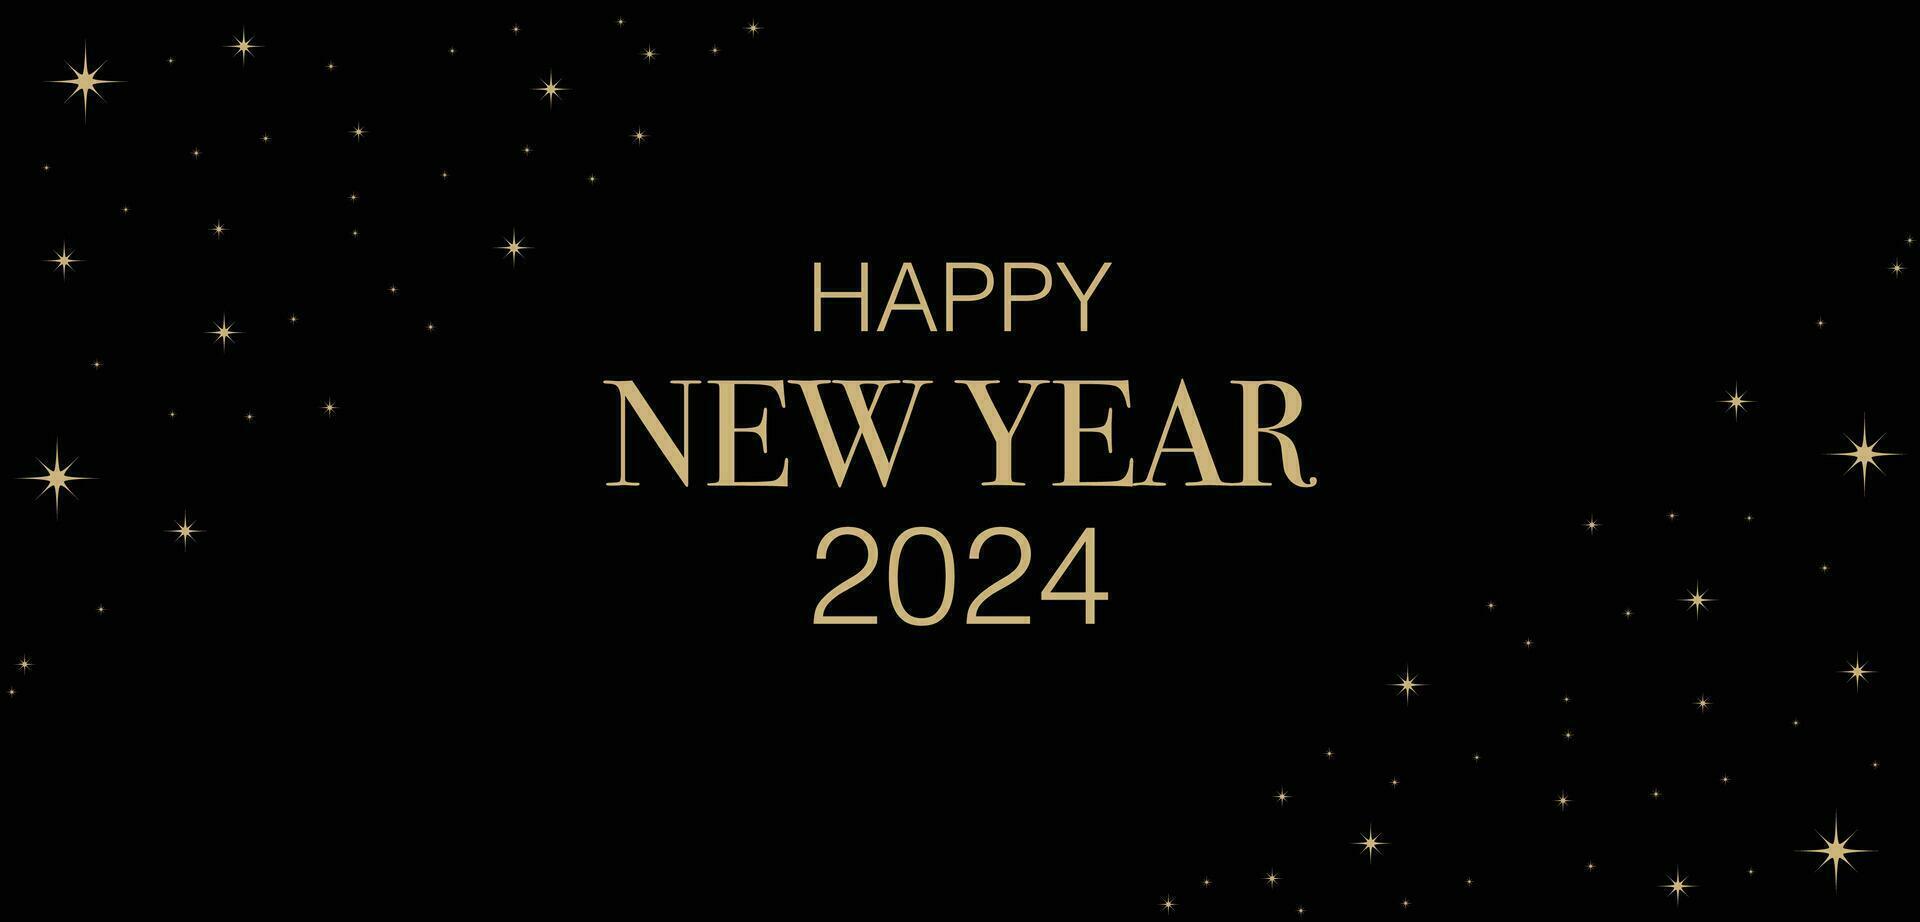 contento nuevo año 2024 sencillo diseño negro y oro vector